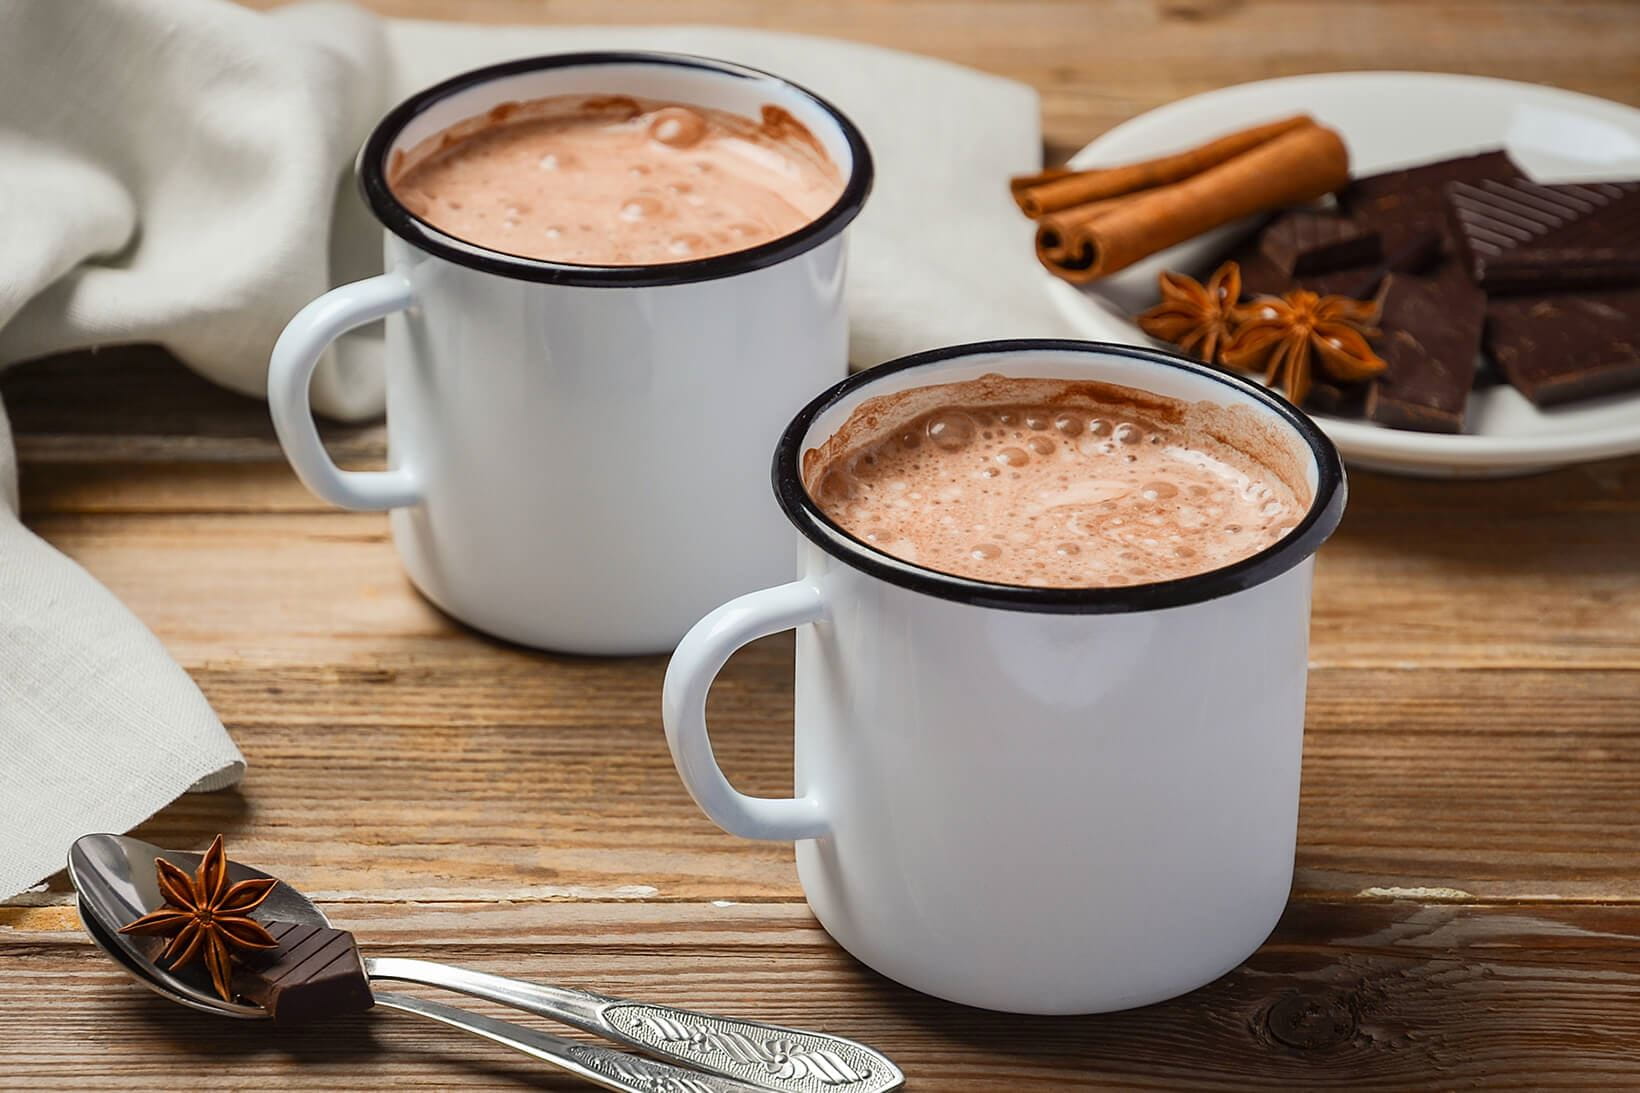 Rezept #1: Glow Hot Chocolate